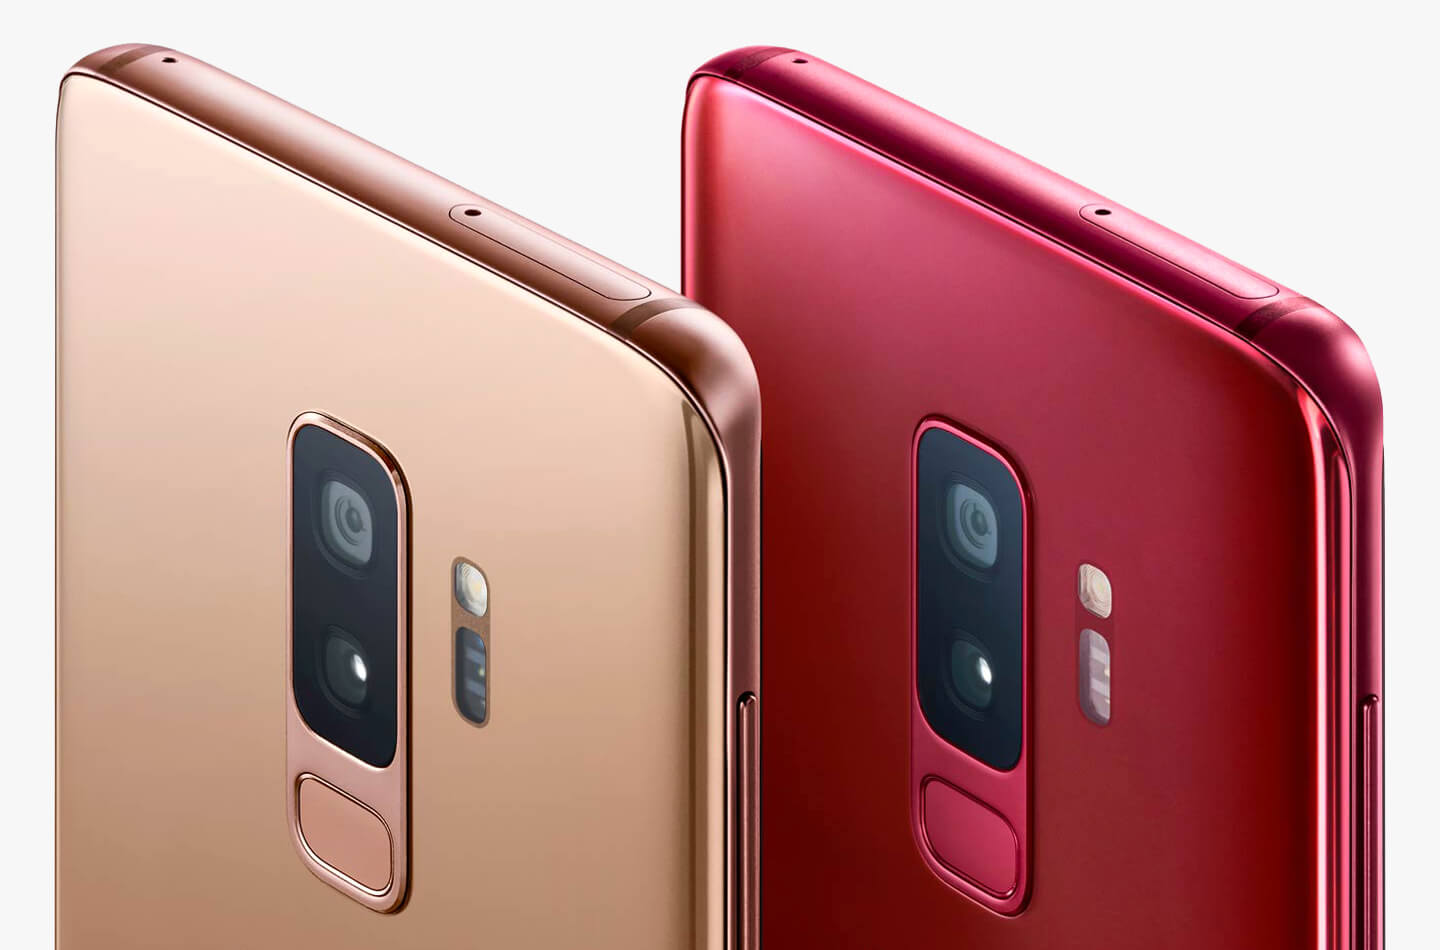 Ediciones Samsung Galaxy S9 Sunrise Gold y Burgundy Red